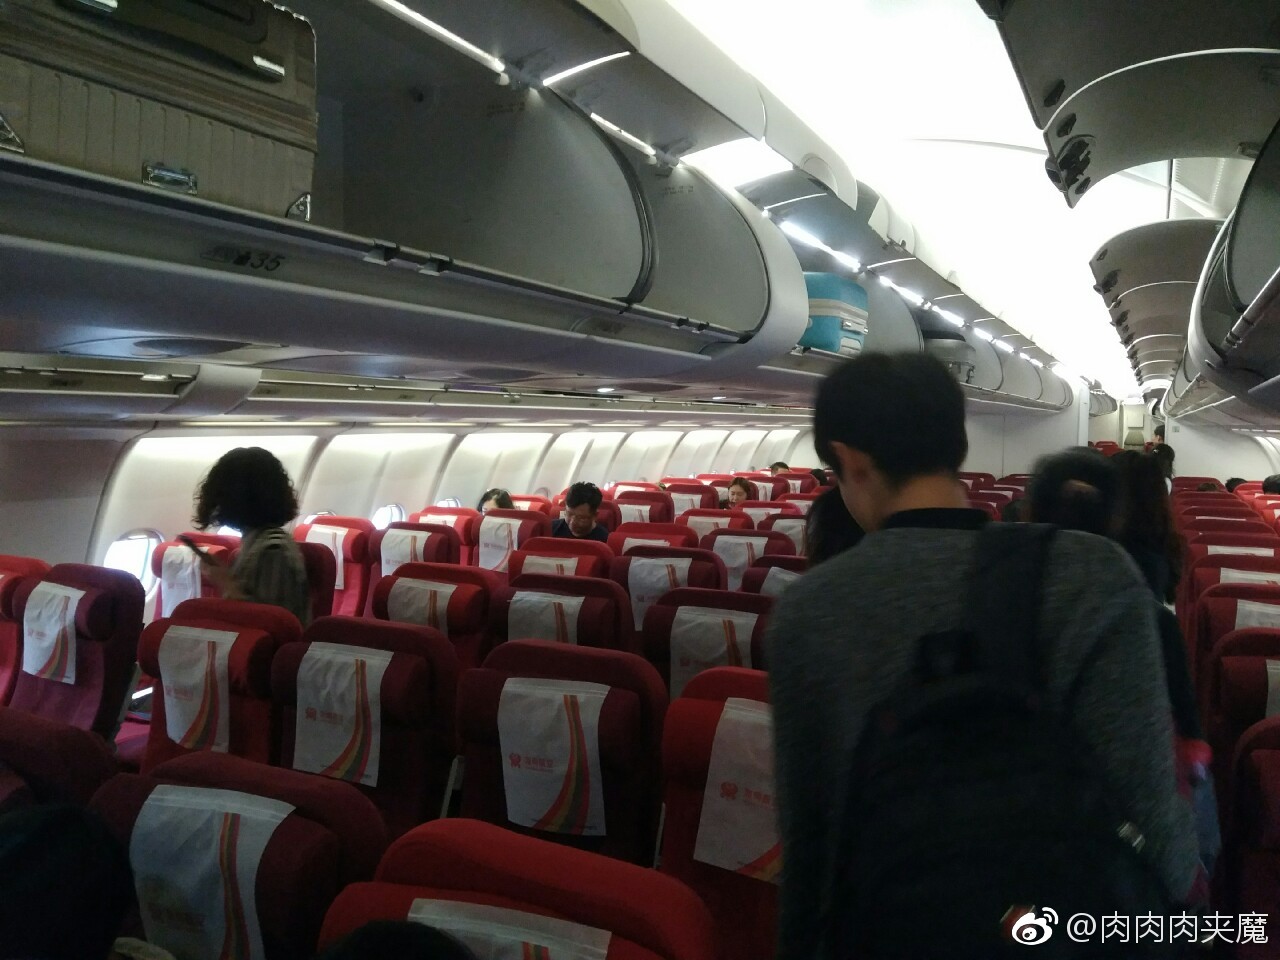 天津航空成功引进一架A330-300型飞机_资讯频道_悦游全球旅行网